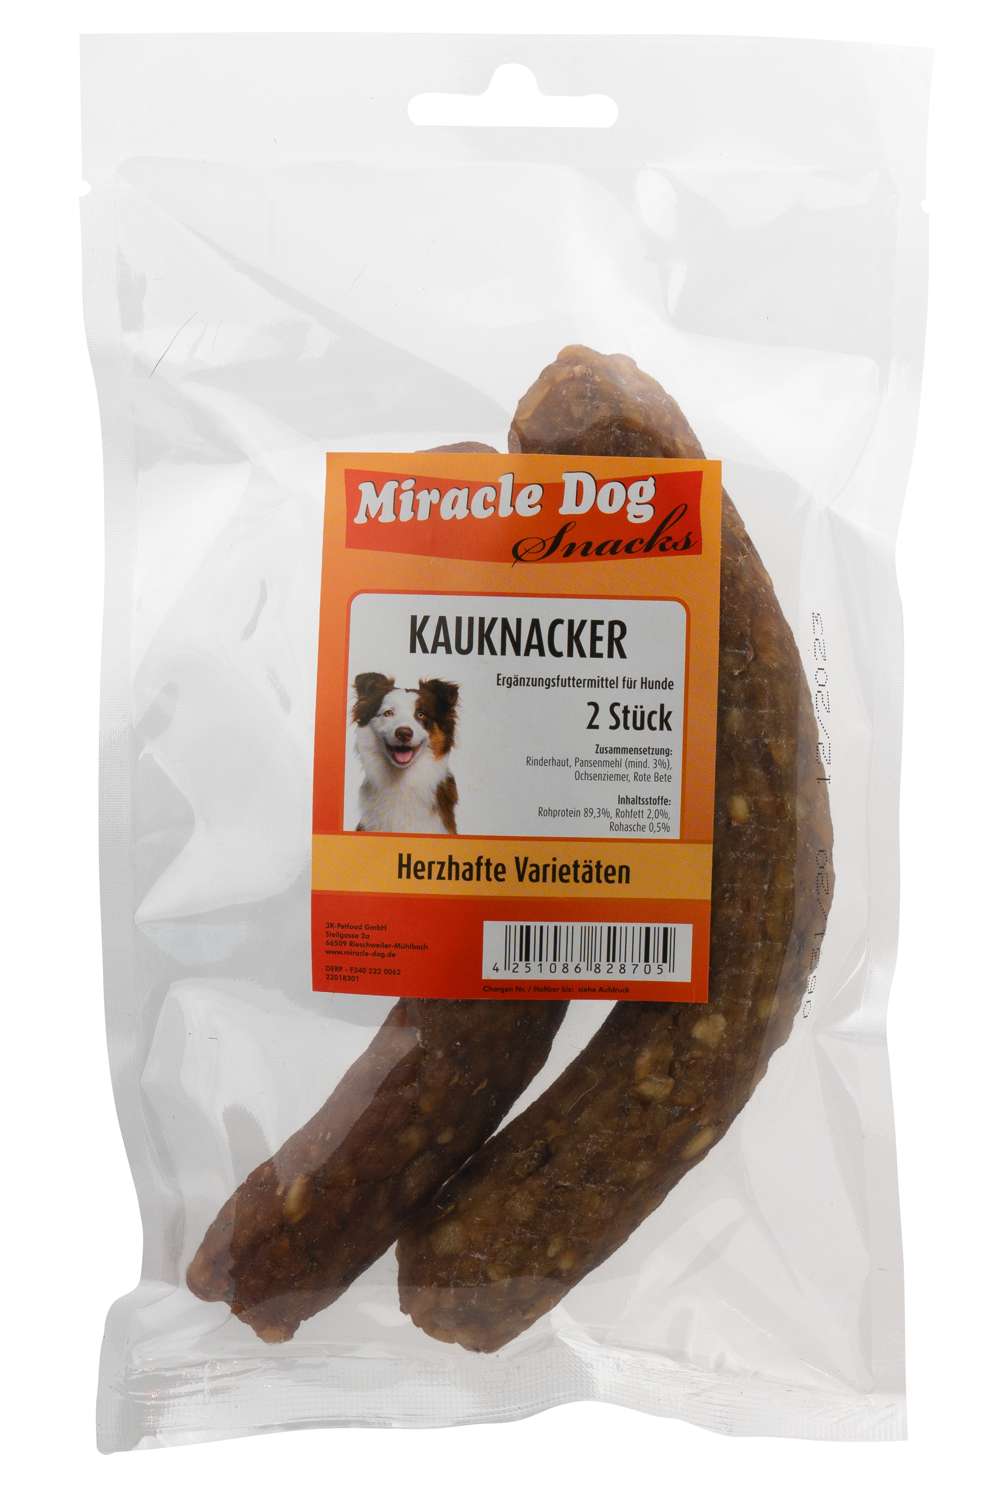 Miracle Dog Kauknacker